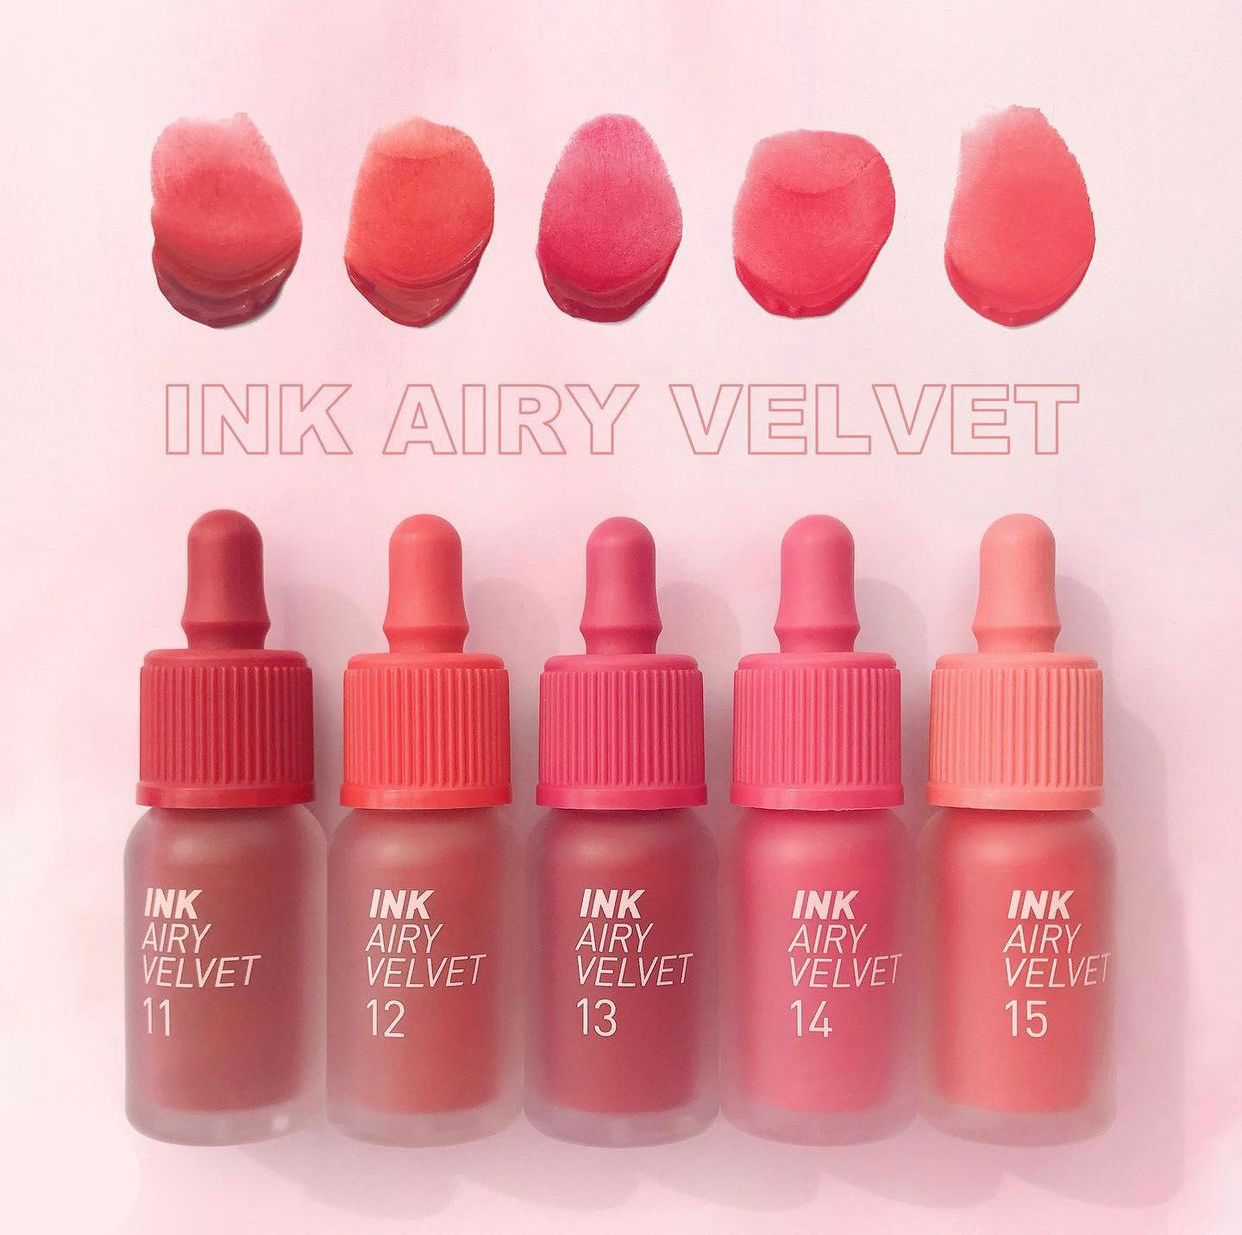 Inky Airy Velvet - BeautiQn